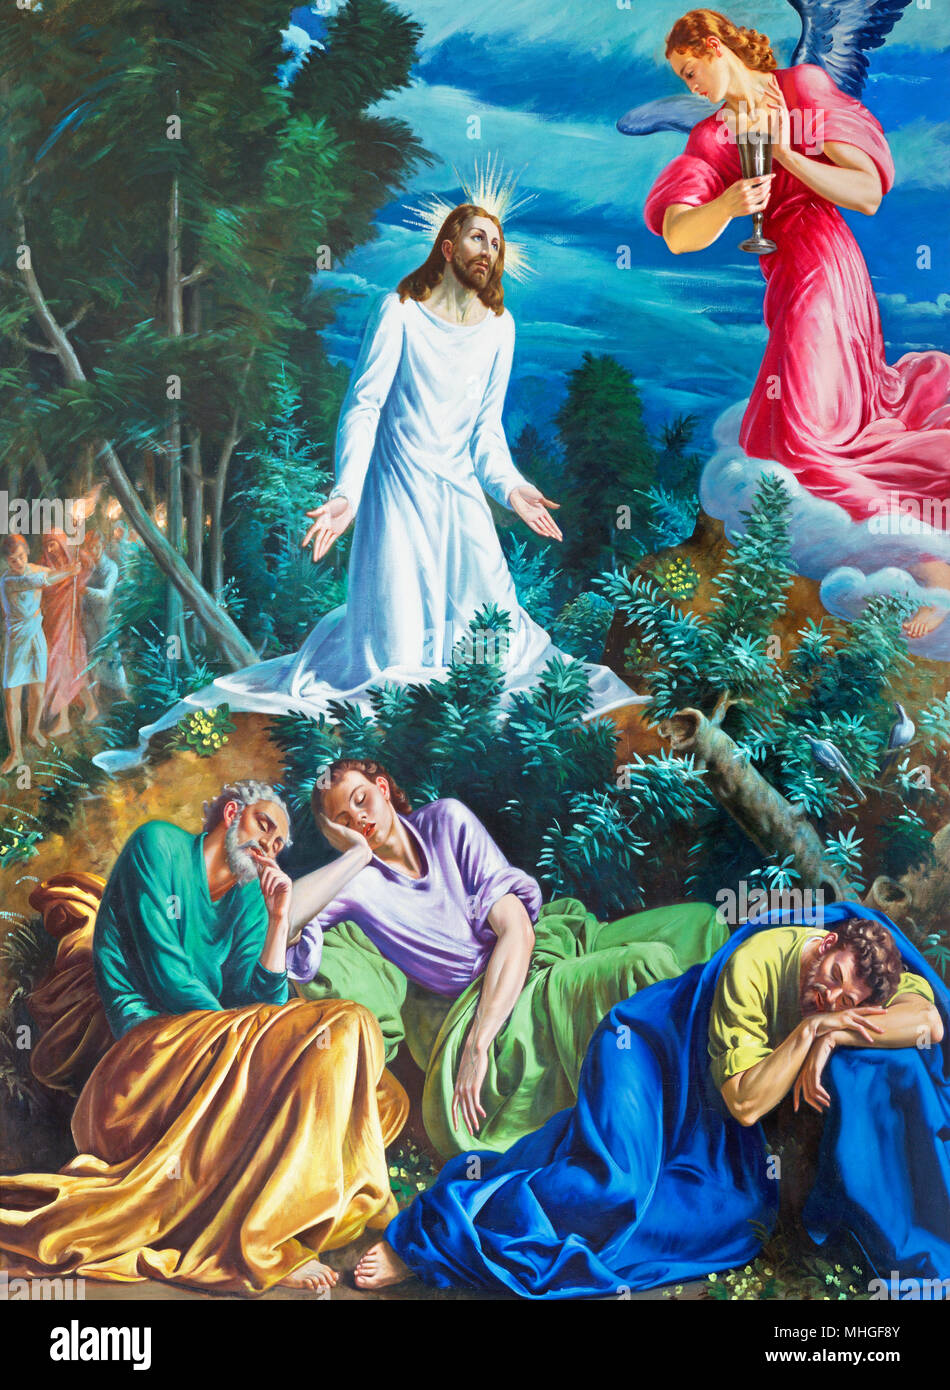 PARMA, Italia - 16 Aprile 2018: la pittura della preghiera di Gesù nel Getsemani giardino nella Chiesa di San Vitale da D. Pozzi (1894 - 1946). Foto Stock